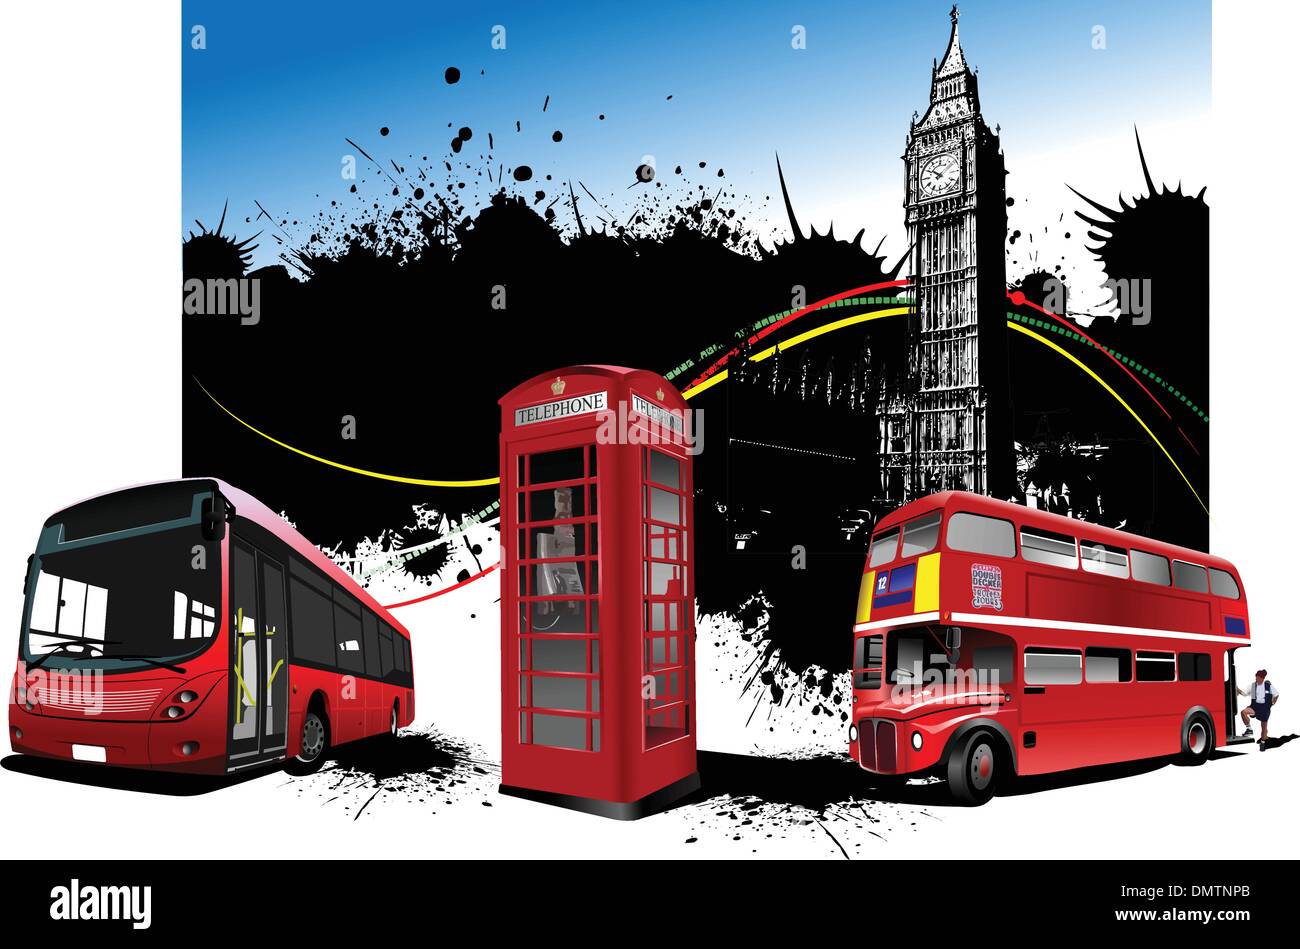 London rot Rarität Bilder. Vektor-illustration Stock Vektor